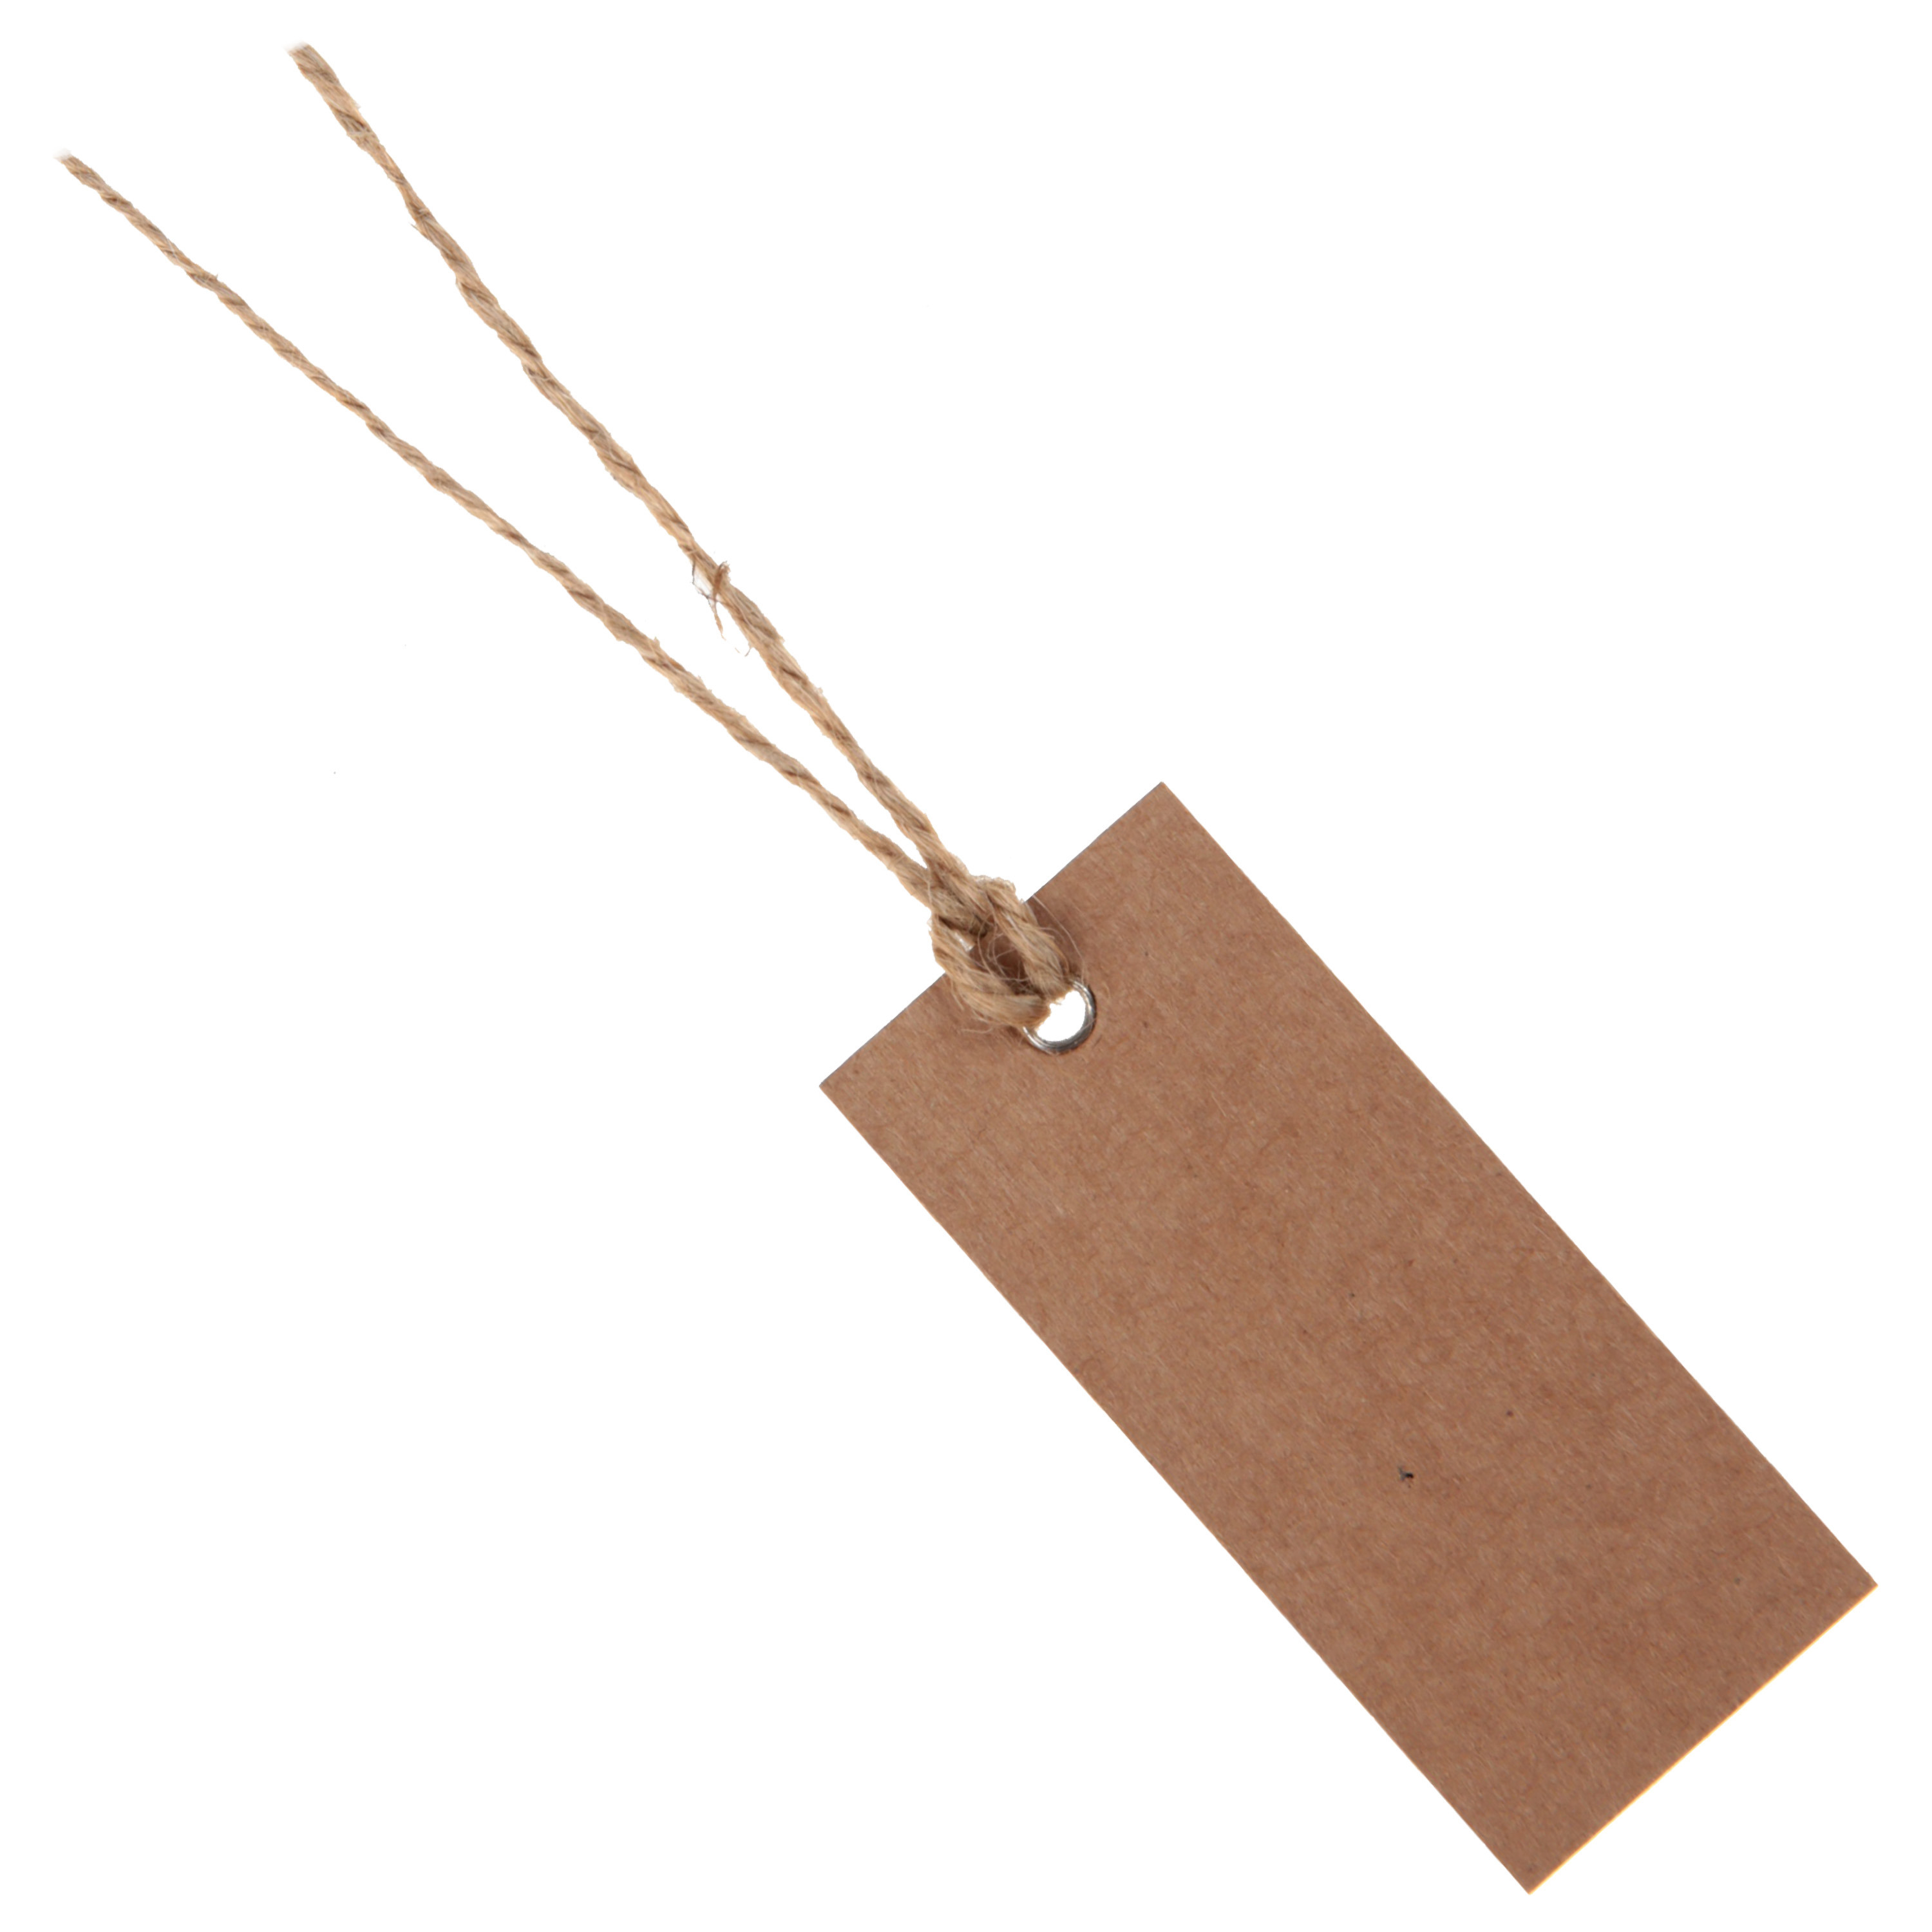 Santex cadeaulabels kraft met lintje set 12x stuks bruin 3 x 7 cm naam tags